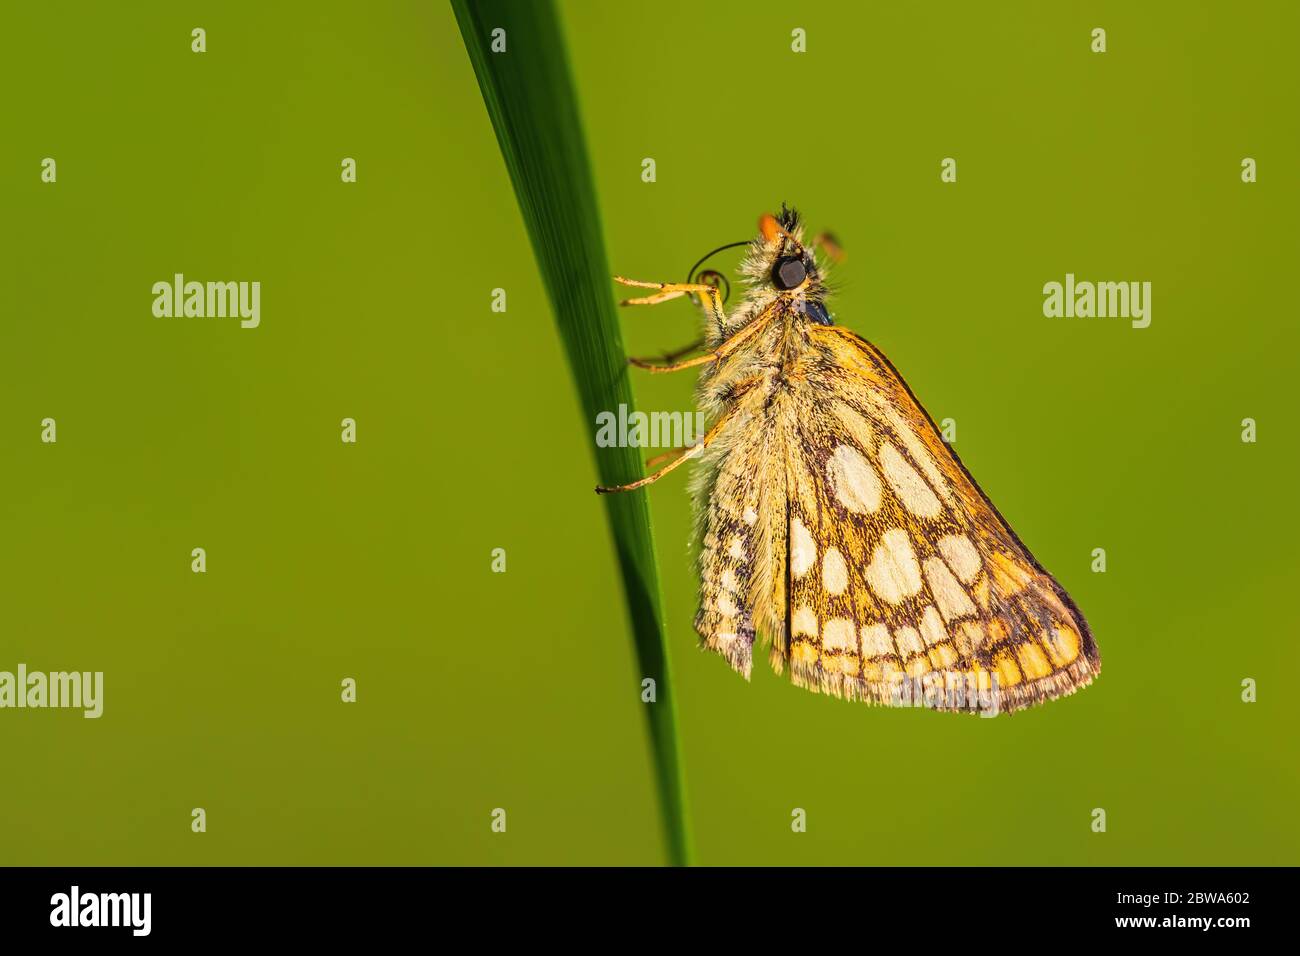 Skipper a scacchi - Carterocephalus palaemon, piccola farfalla marrone punteggiata gialla dai prati europei, Zlin, Repubblica Ceca. Foto Stock